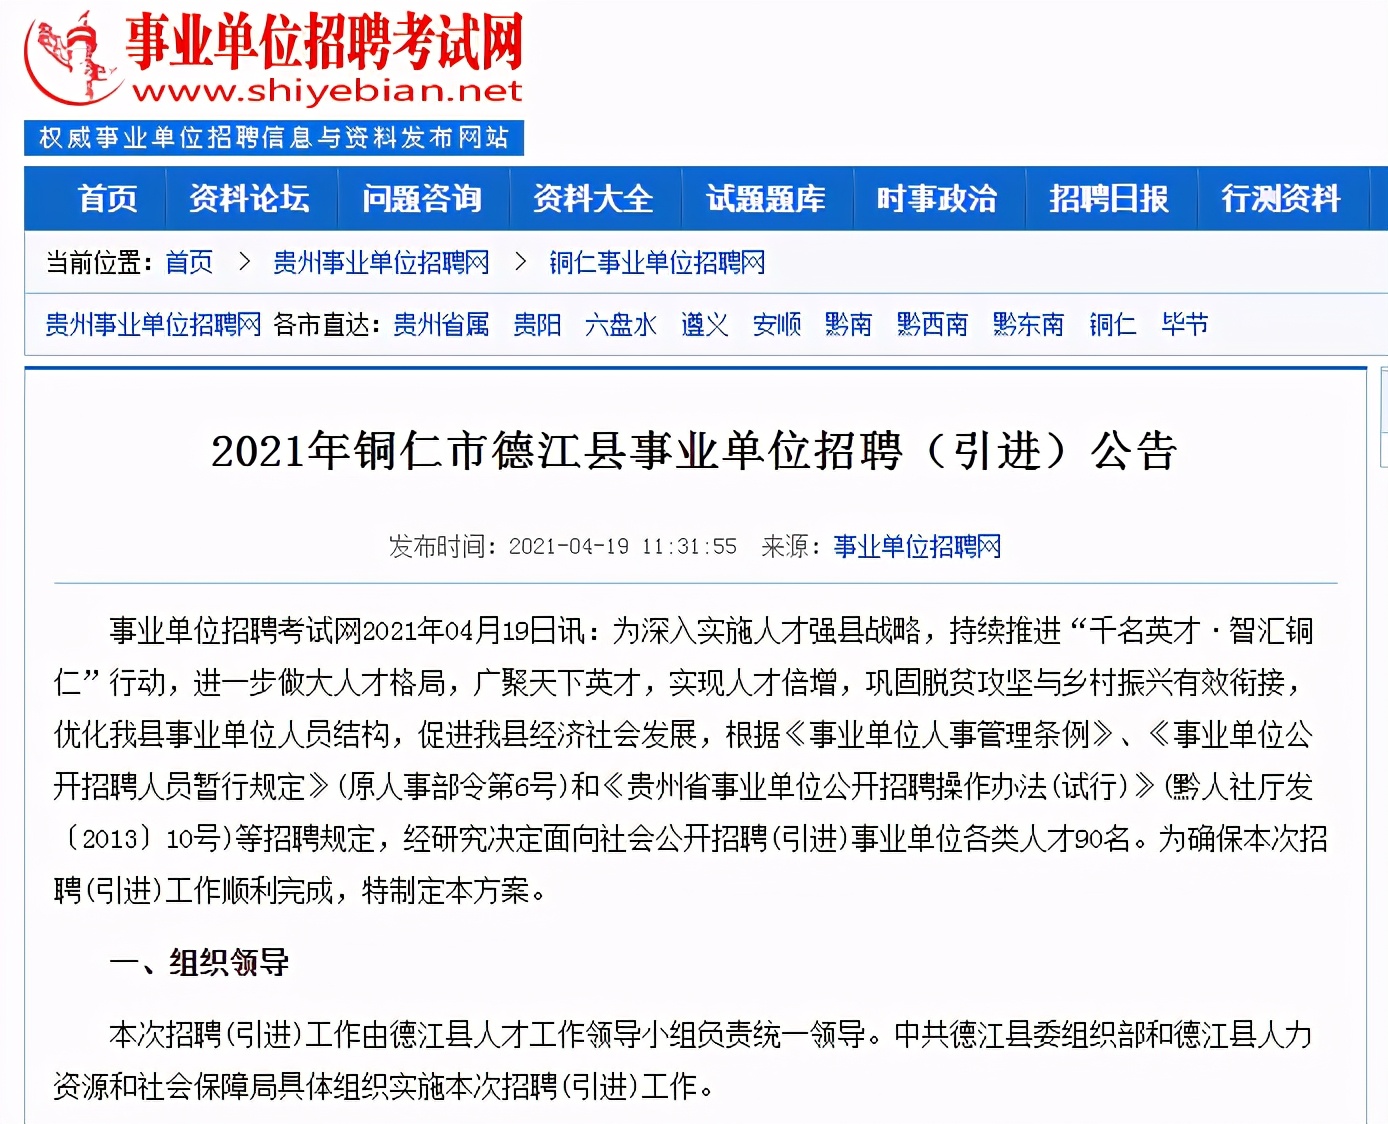 招聘通知（贵州）丨2021年铜仁市德江县事业单位招聘（引进）公告